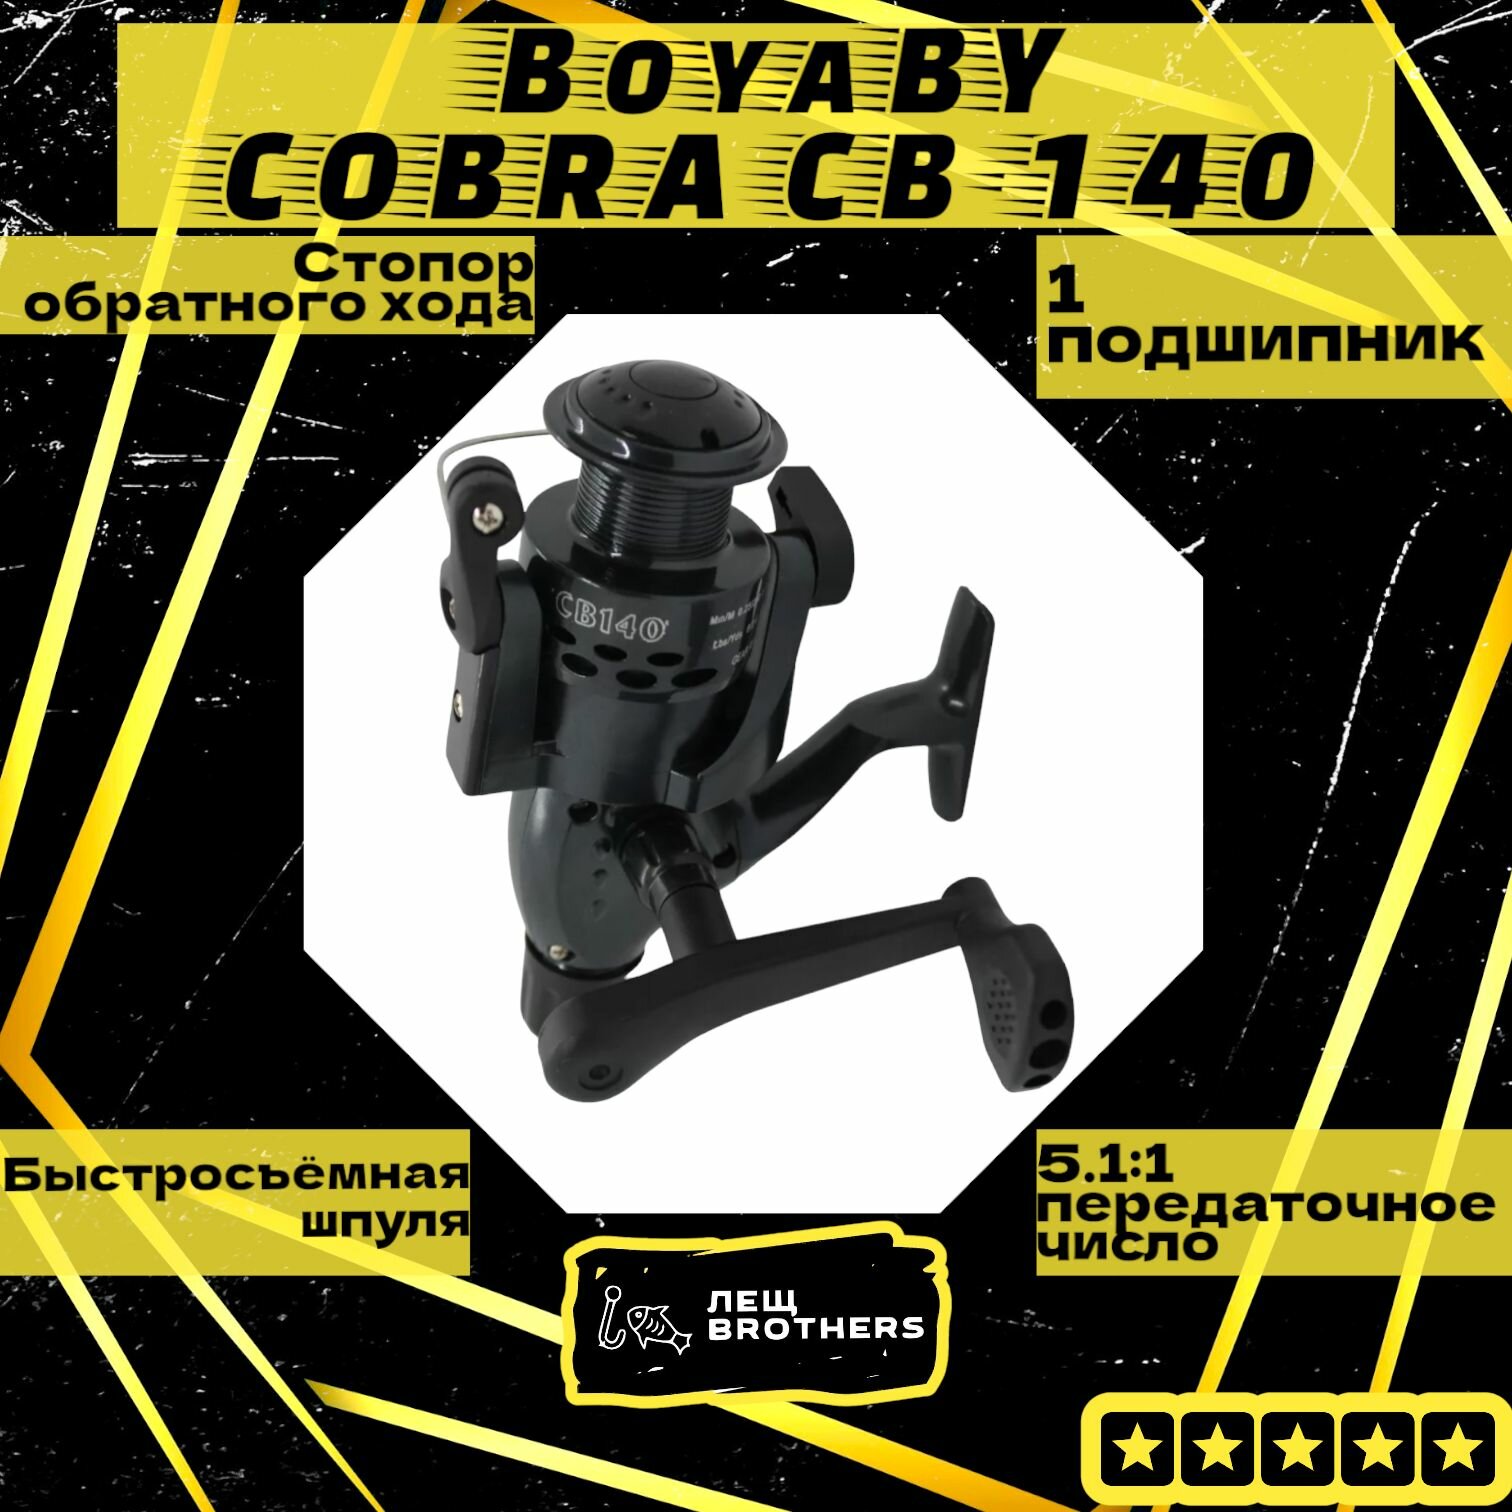 Катушка BoyaBY COBRA CB-140, задний фрикцион, стопор обратного хода, быстросъёмная шпуля, 1 подшипник, передаточное число 5.1:1